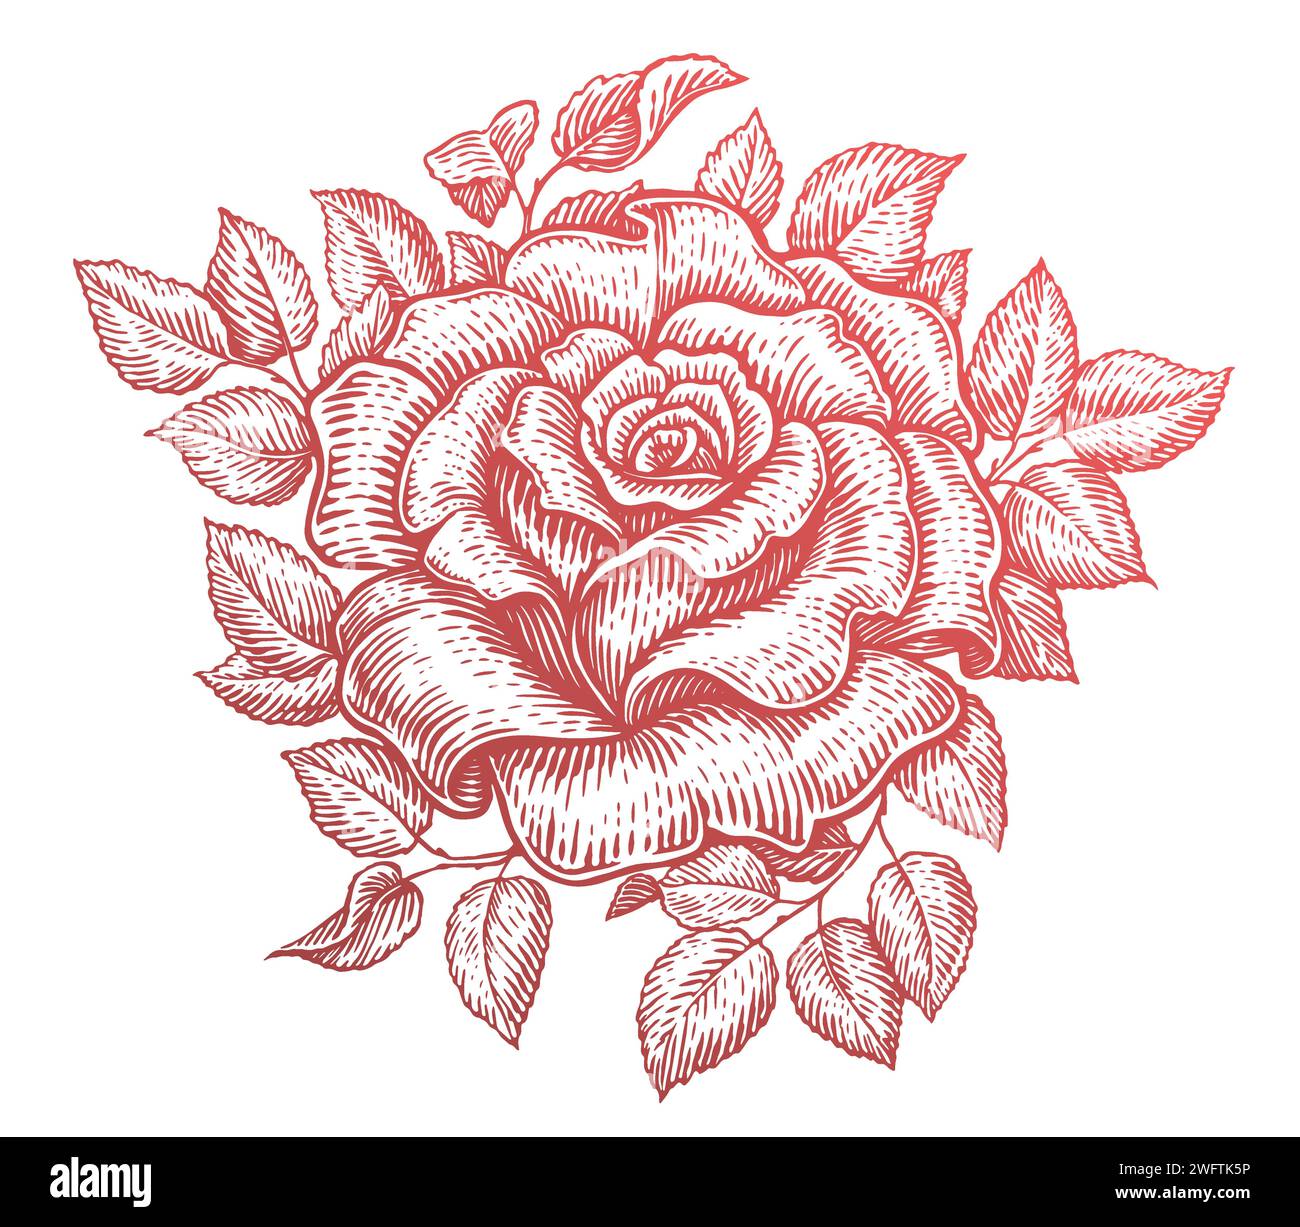 Rose mit Blättern. Gartenblume. Handgezeichnete Vintage-Skizze Vektor-Illustration Stock Vektor